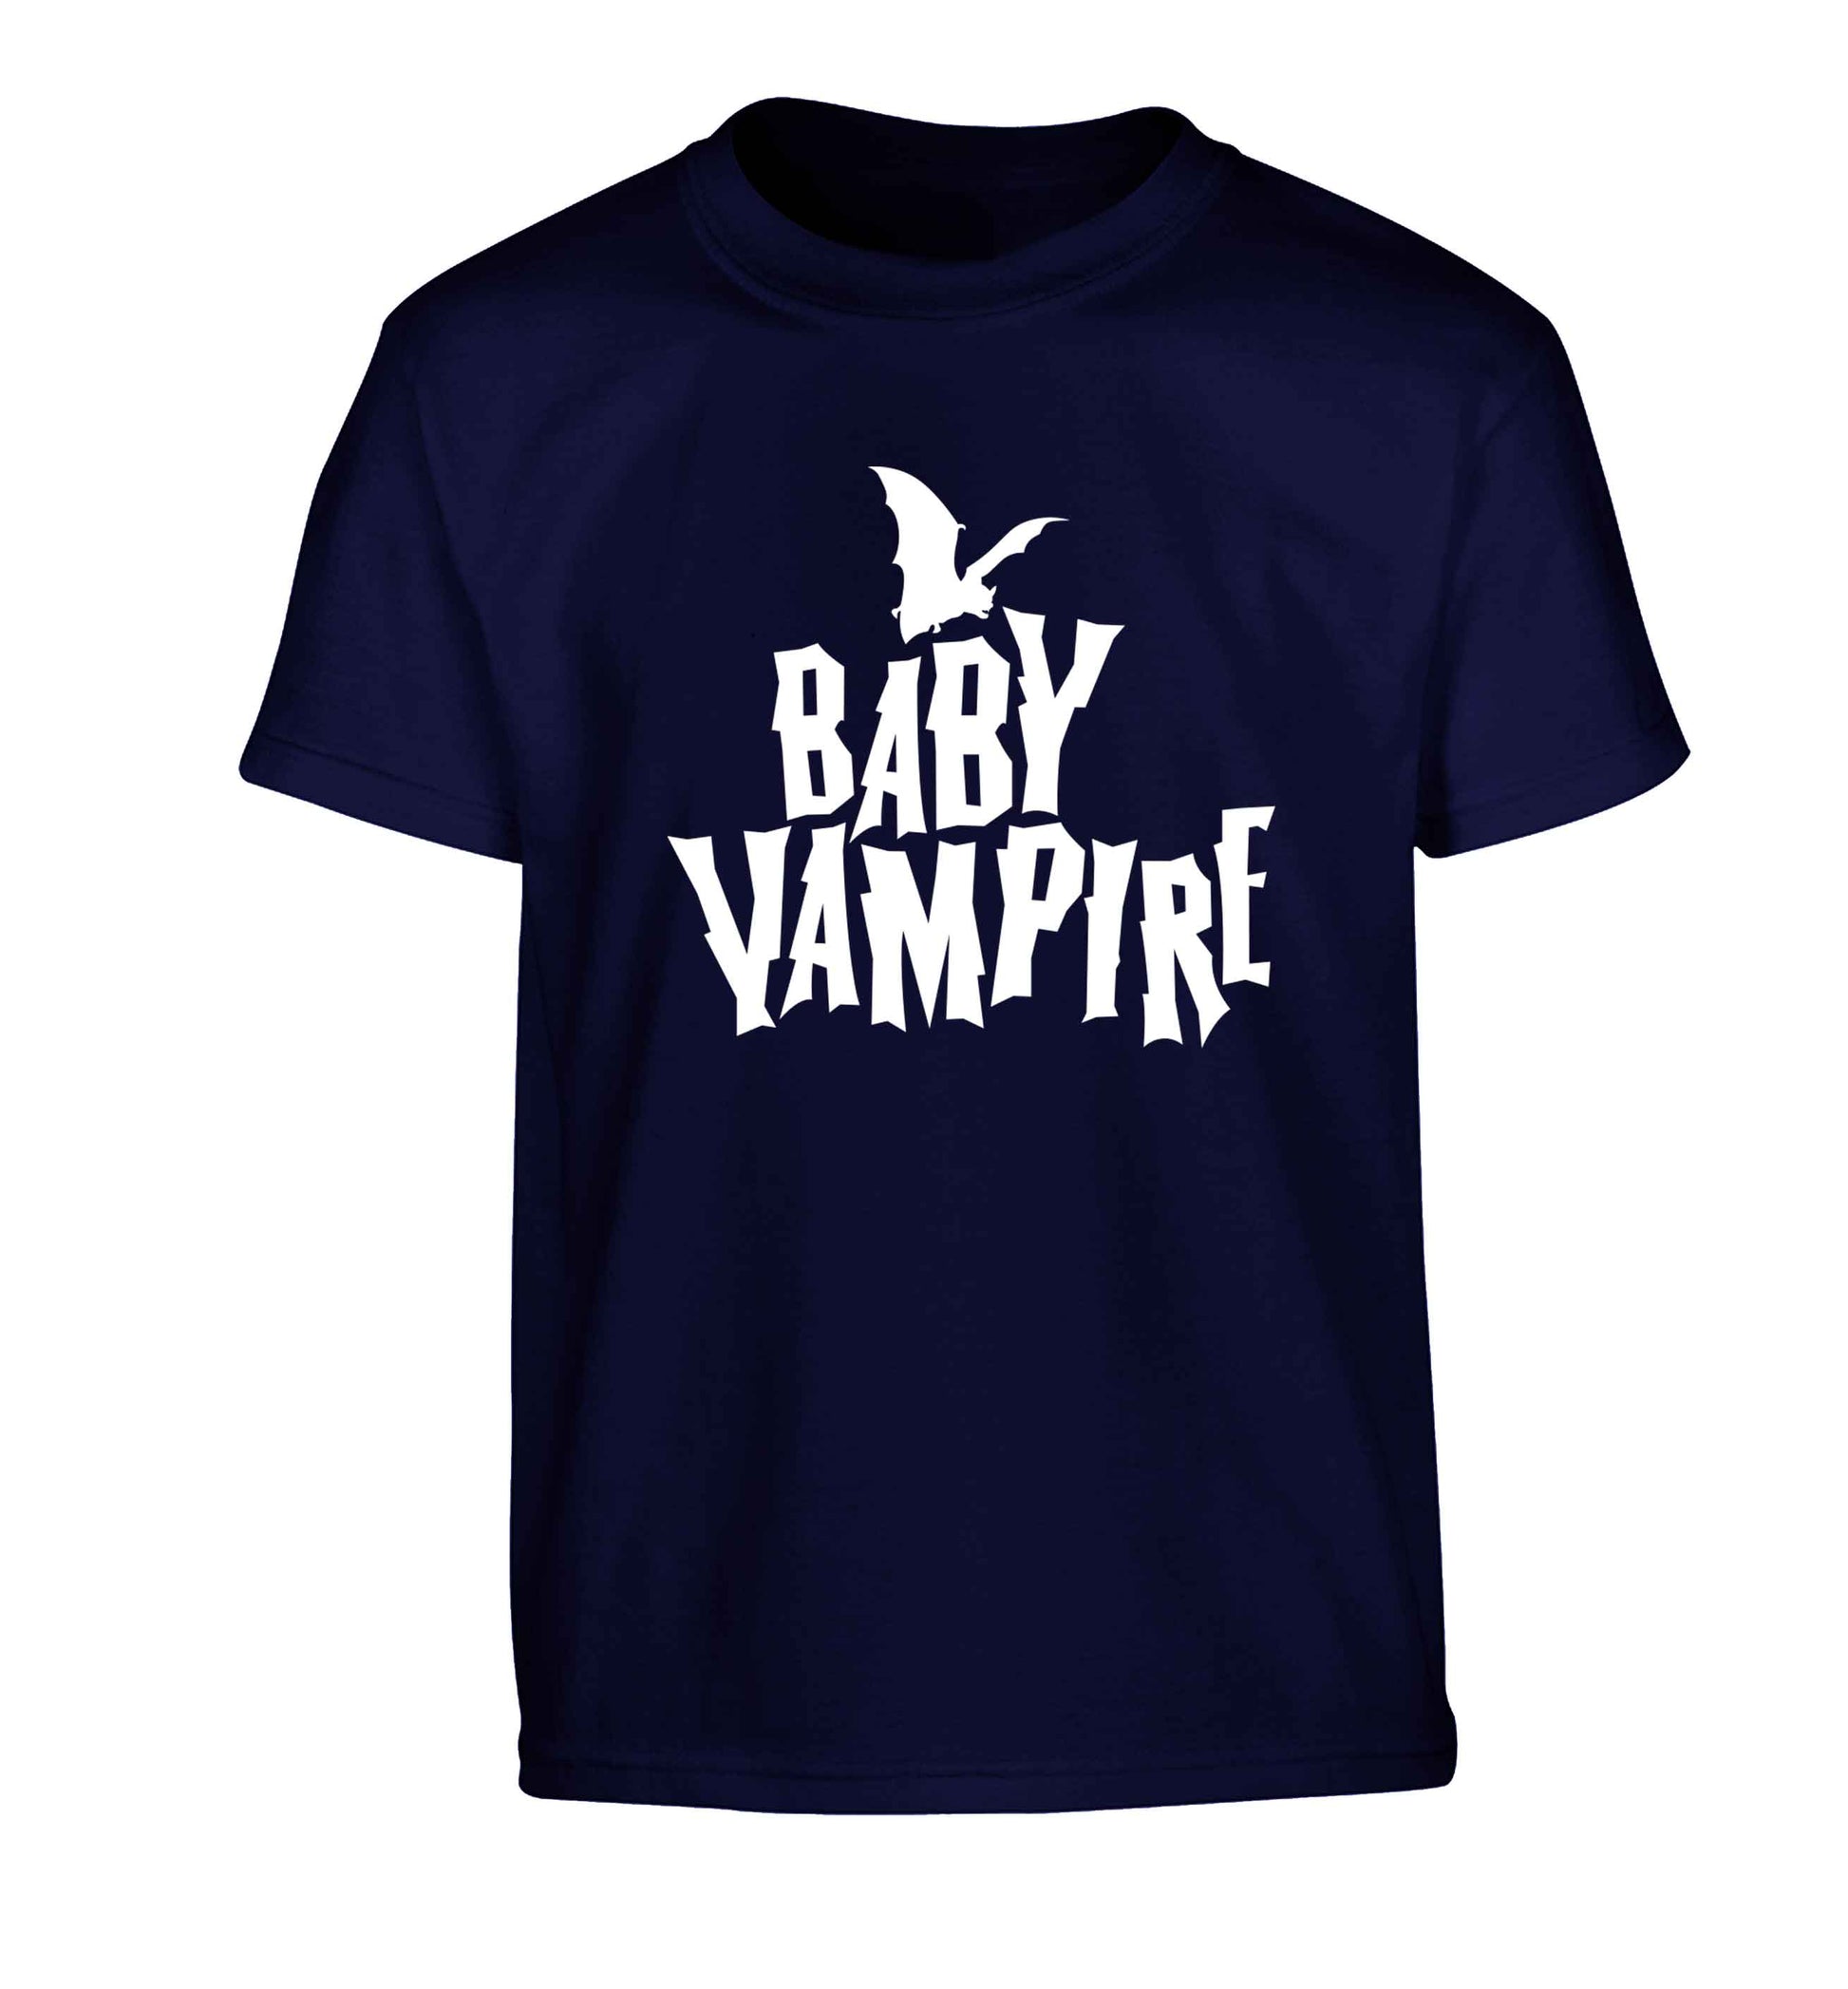 Baby vampire Children's navy Tshirt 12-13 Years